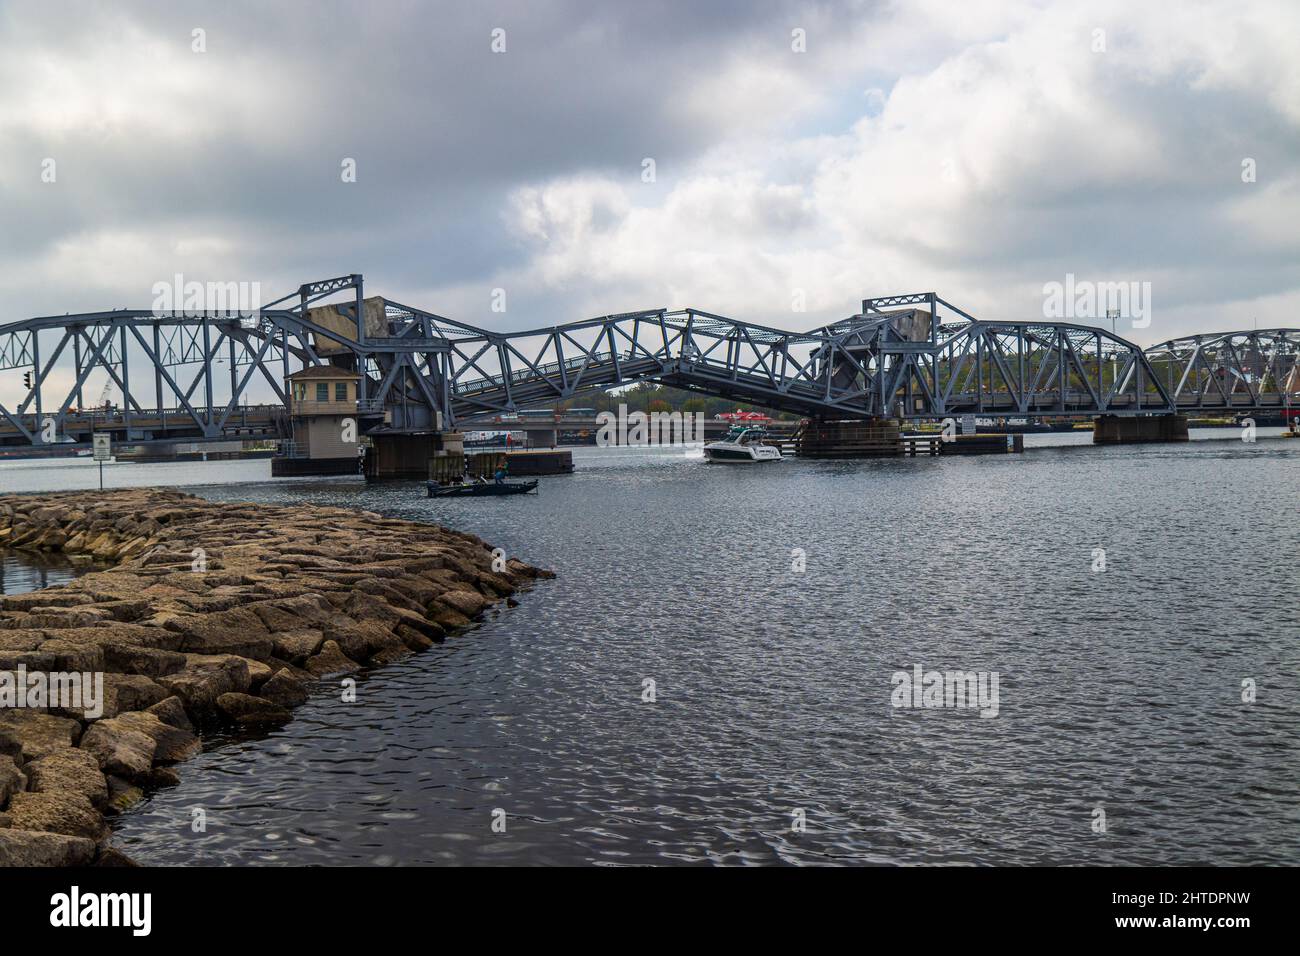 El puente de Sturgeon Bay en Door County, Wisconsin, Estados Unidos en un día nublado Foto de stock